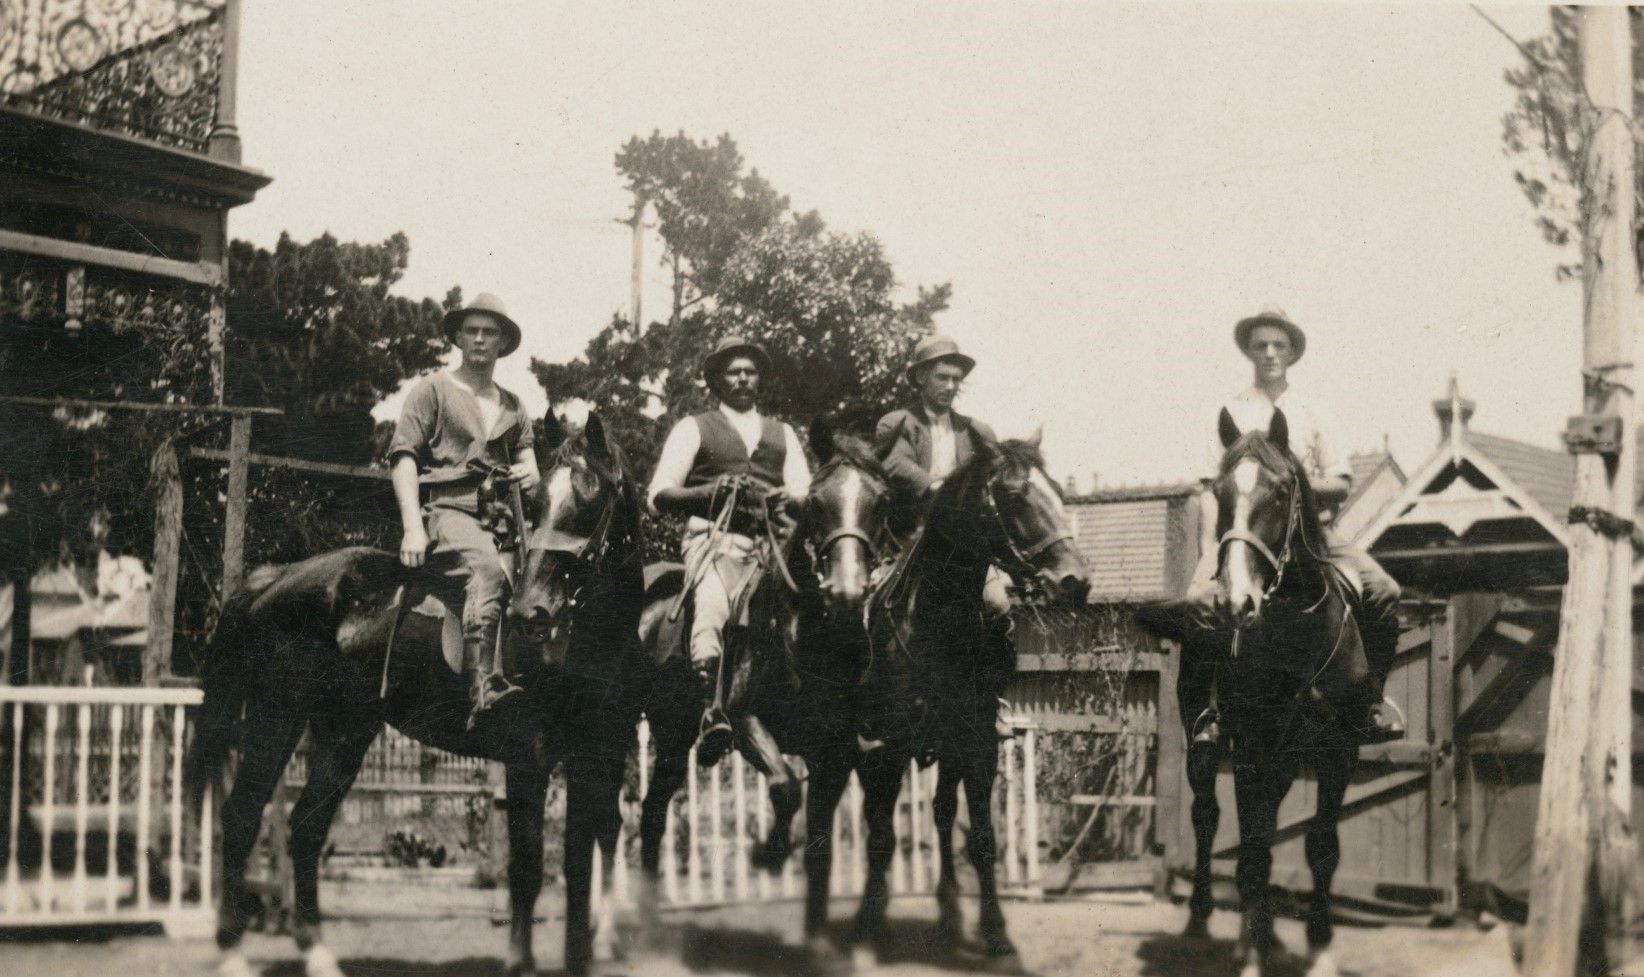 Four men on horseback